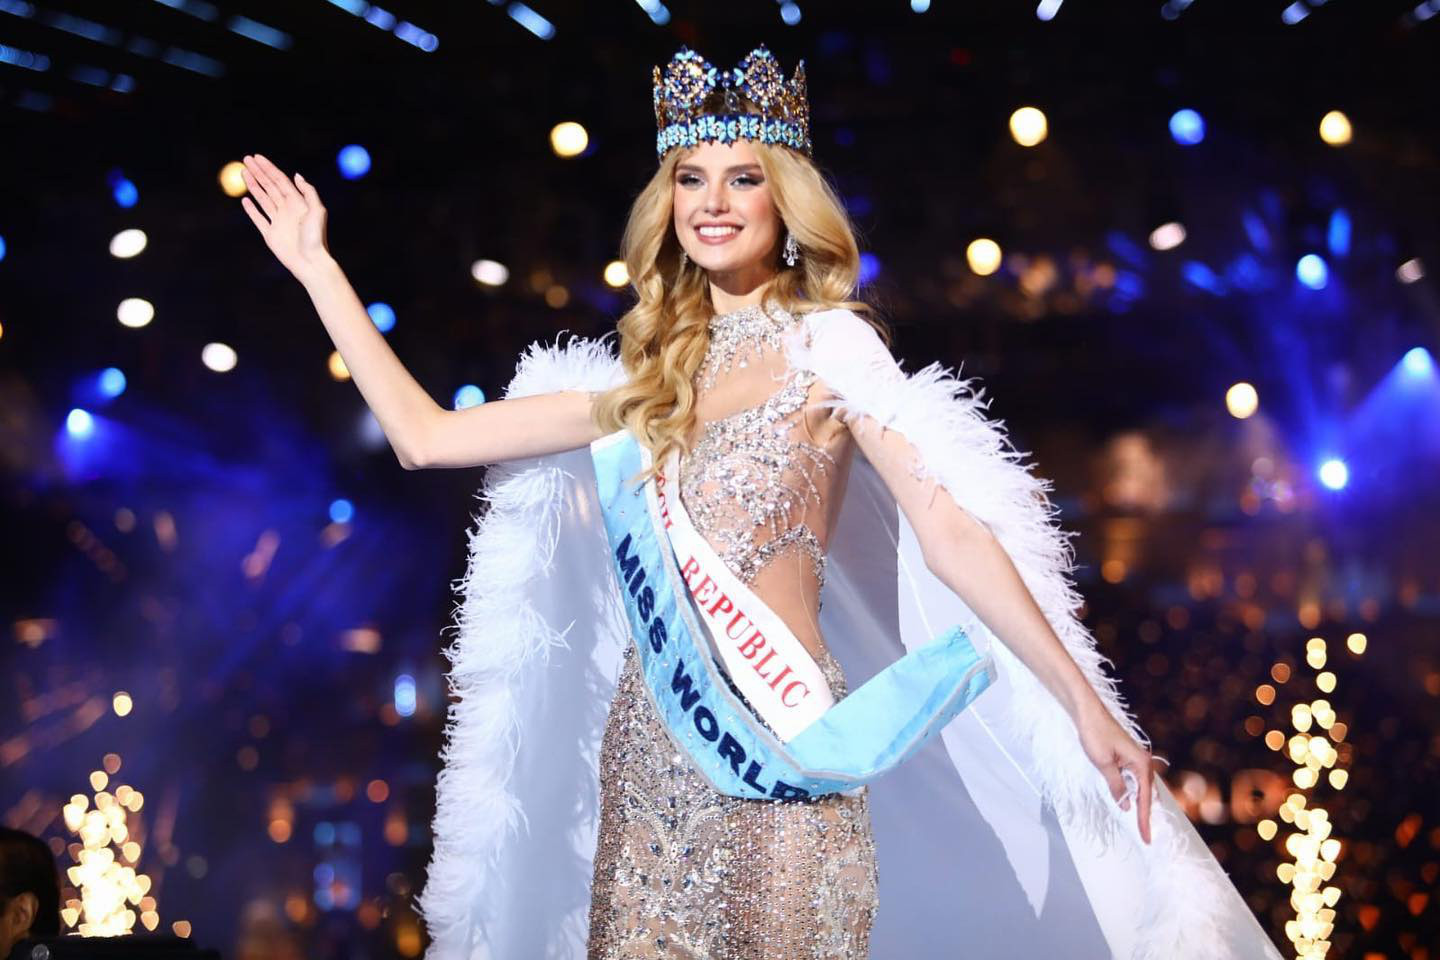 Thí sinh đến từ Cộng hòa Séc đăng quang Miss World lần thứ 71 - Ảnh: Fanpage Miss World